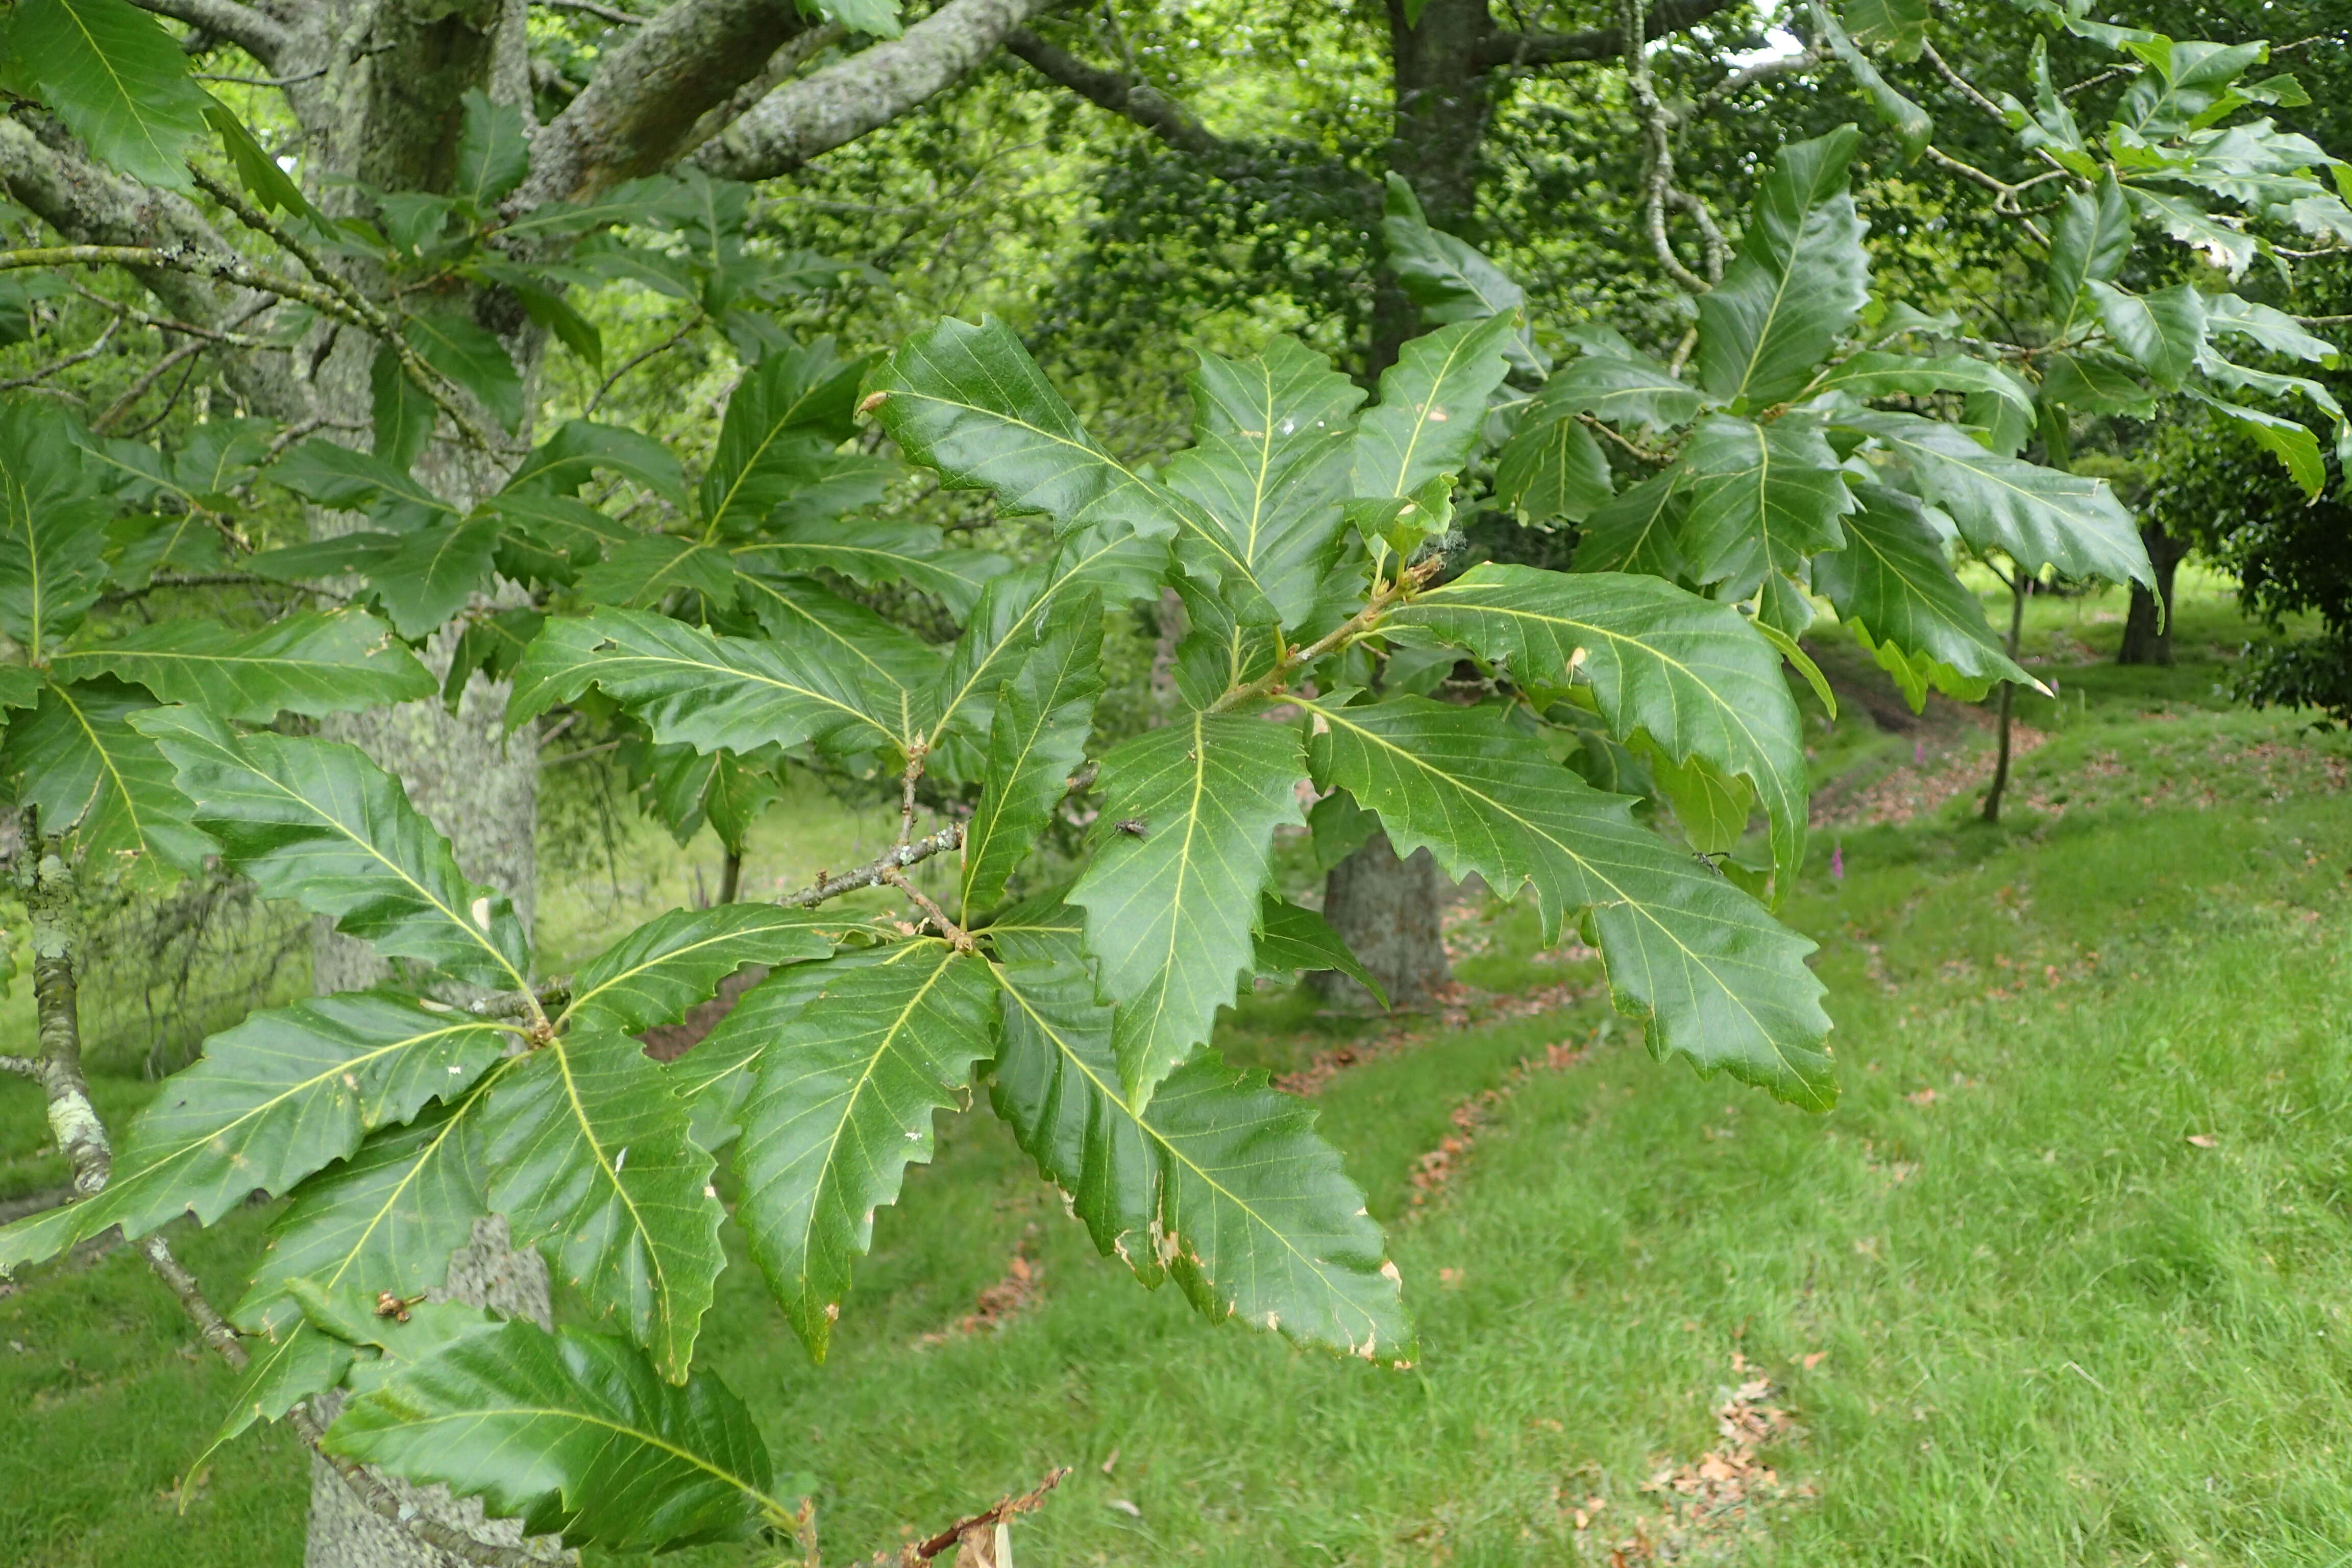 Image of Chestnut-leaved Oak